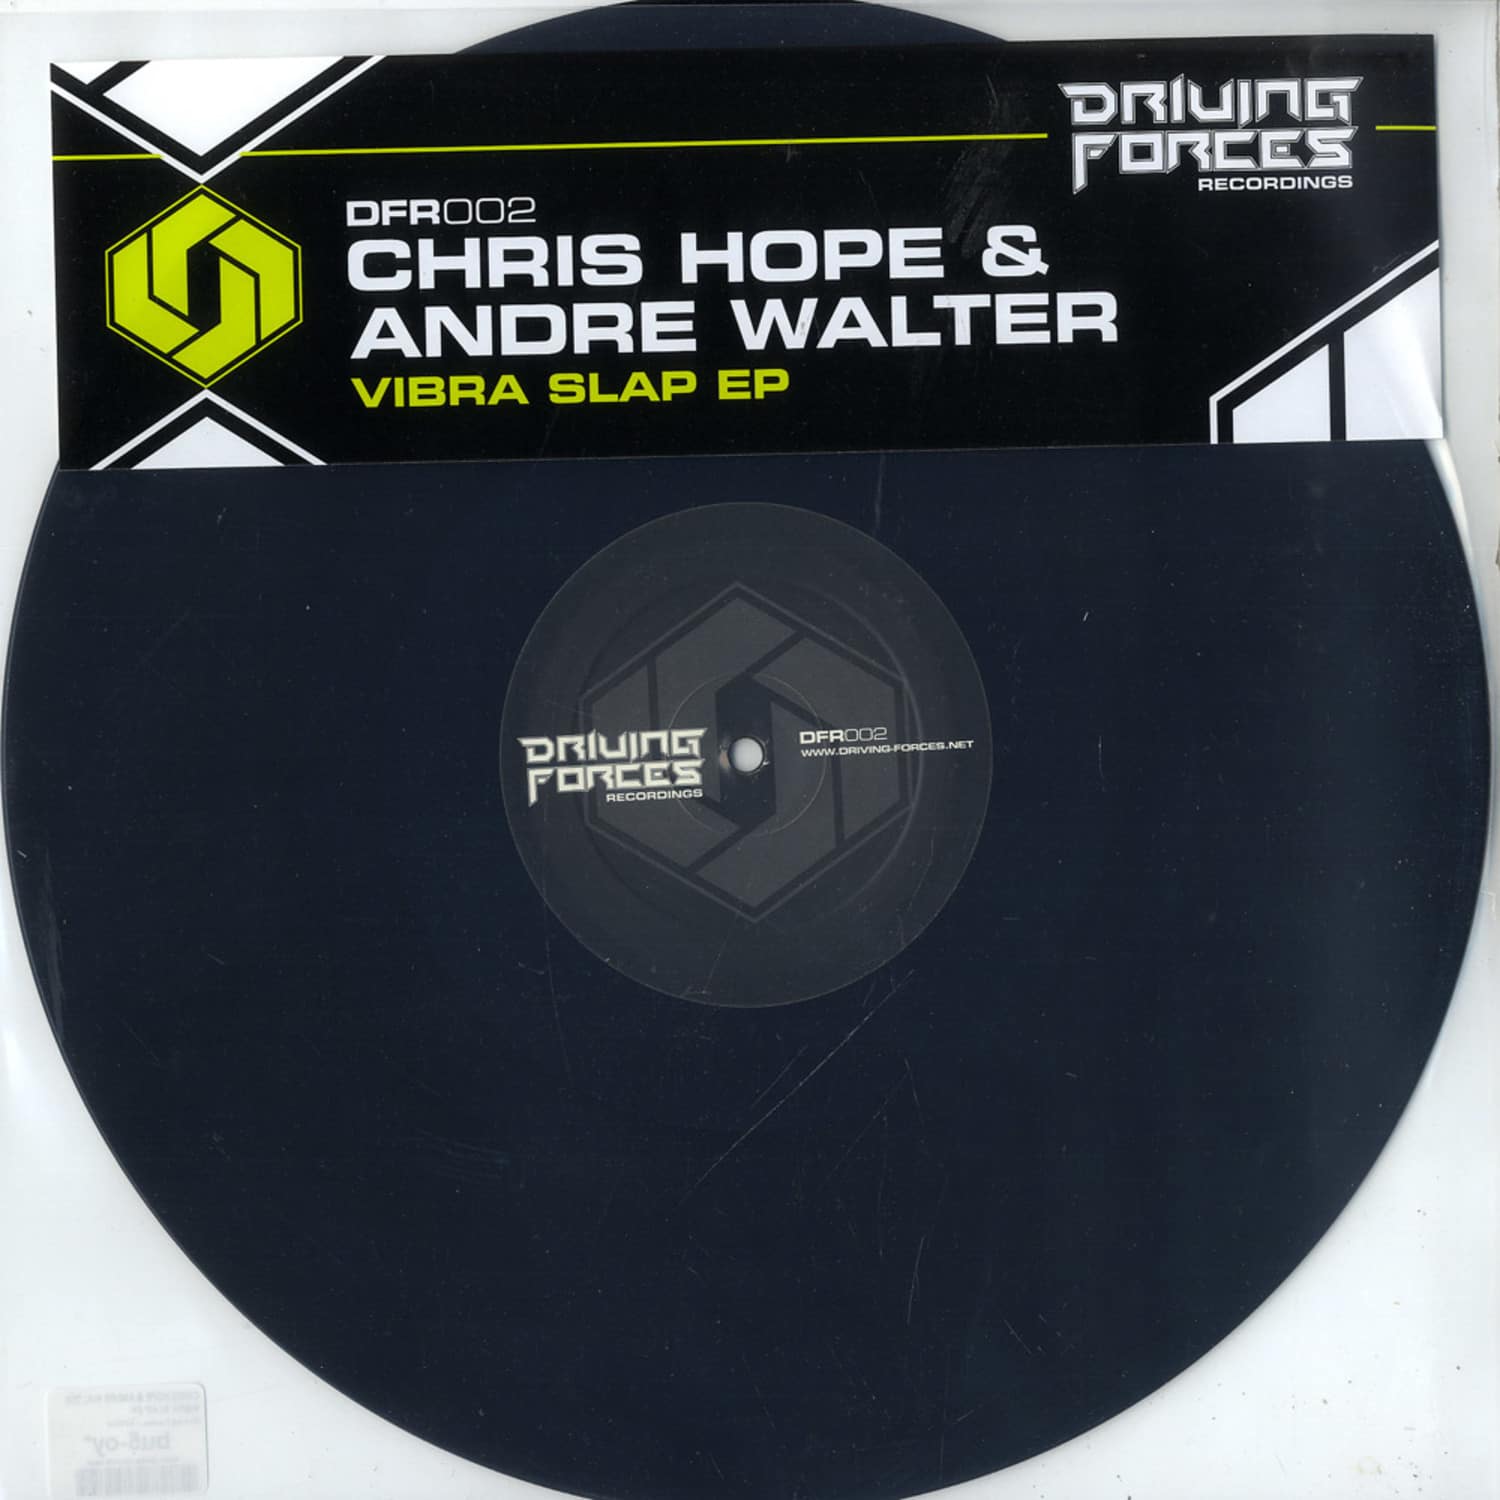 Chris Hope & Andre Walter - VIBRA SLAP EP